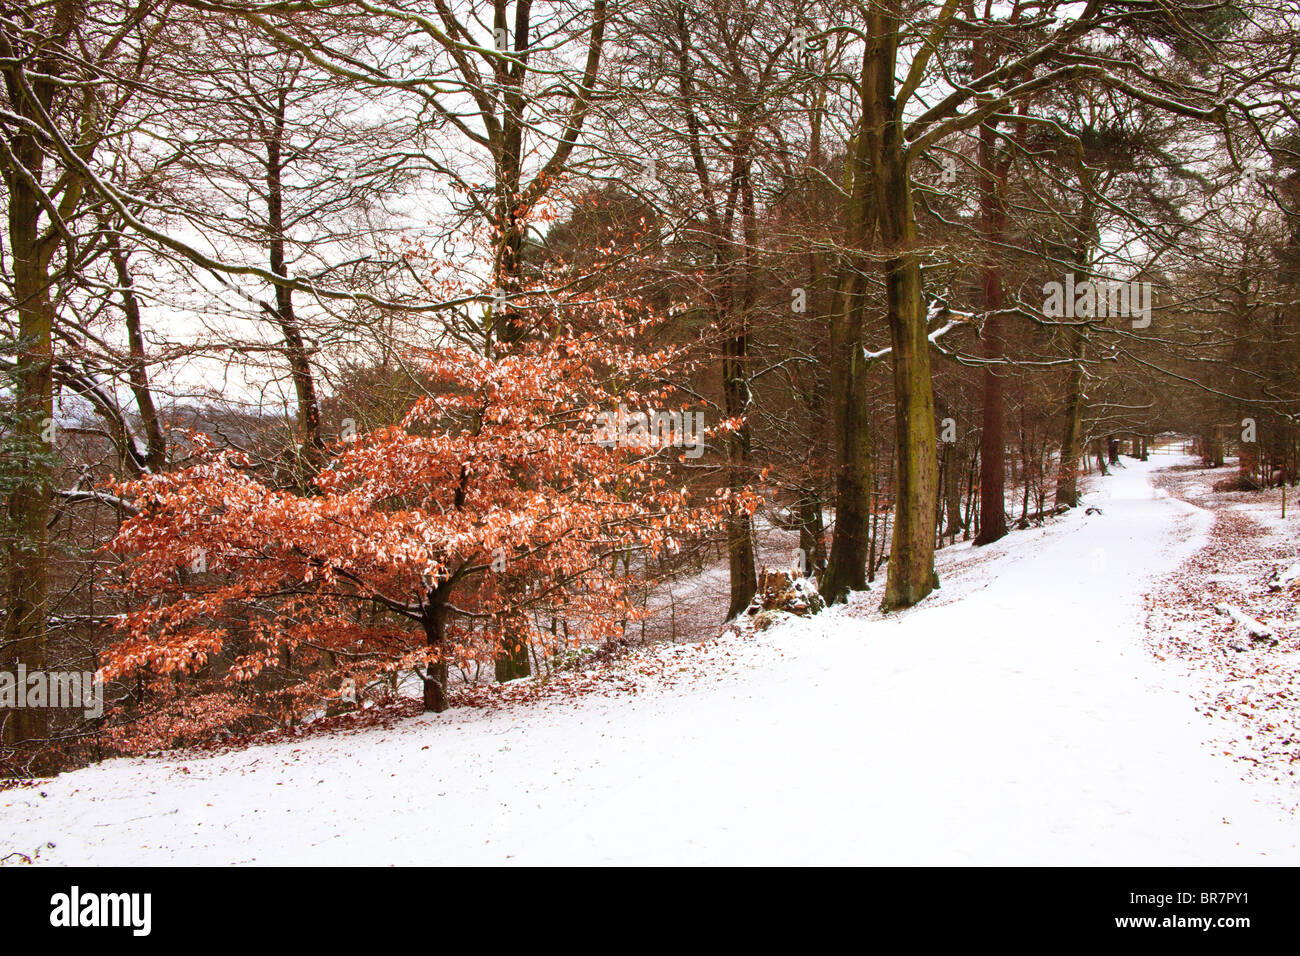 Scène d'hiver montrant la neige couvrant une zone boisée près de Wilmslow Cheshire UK Banque D'Images